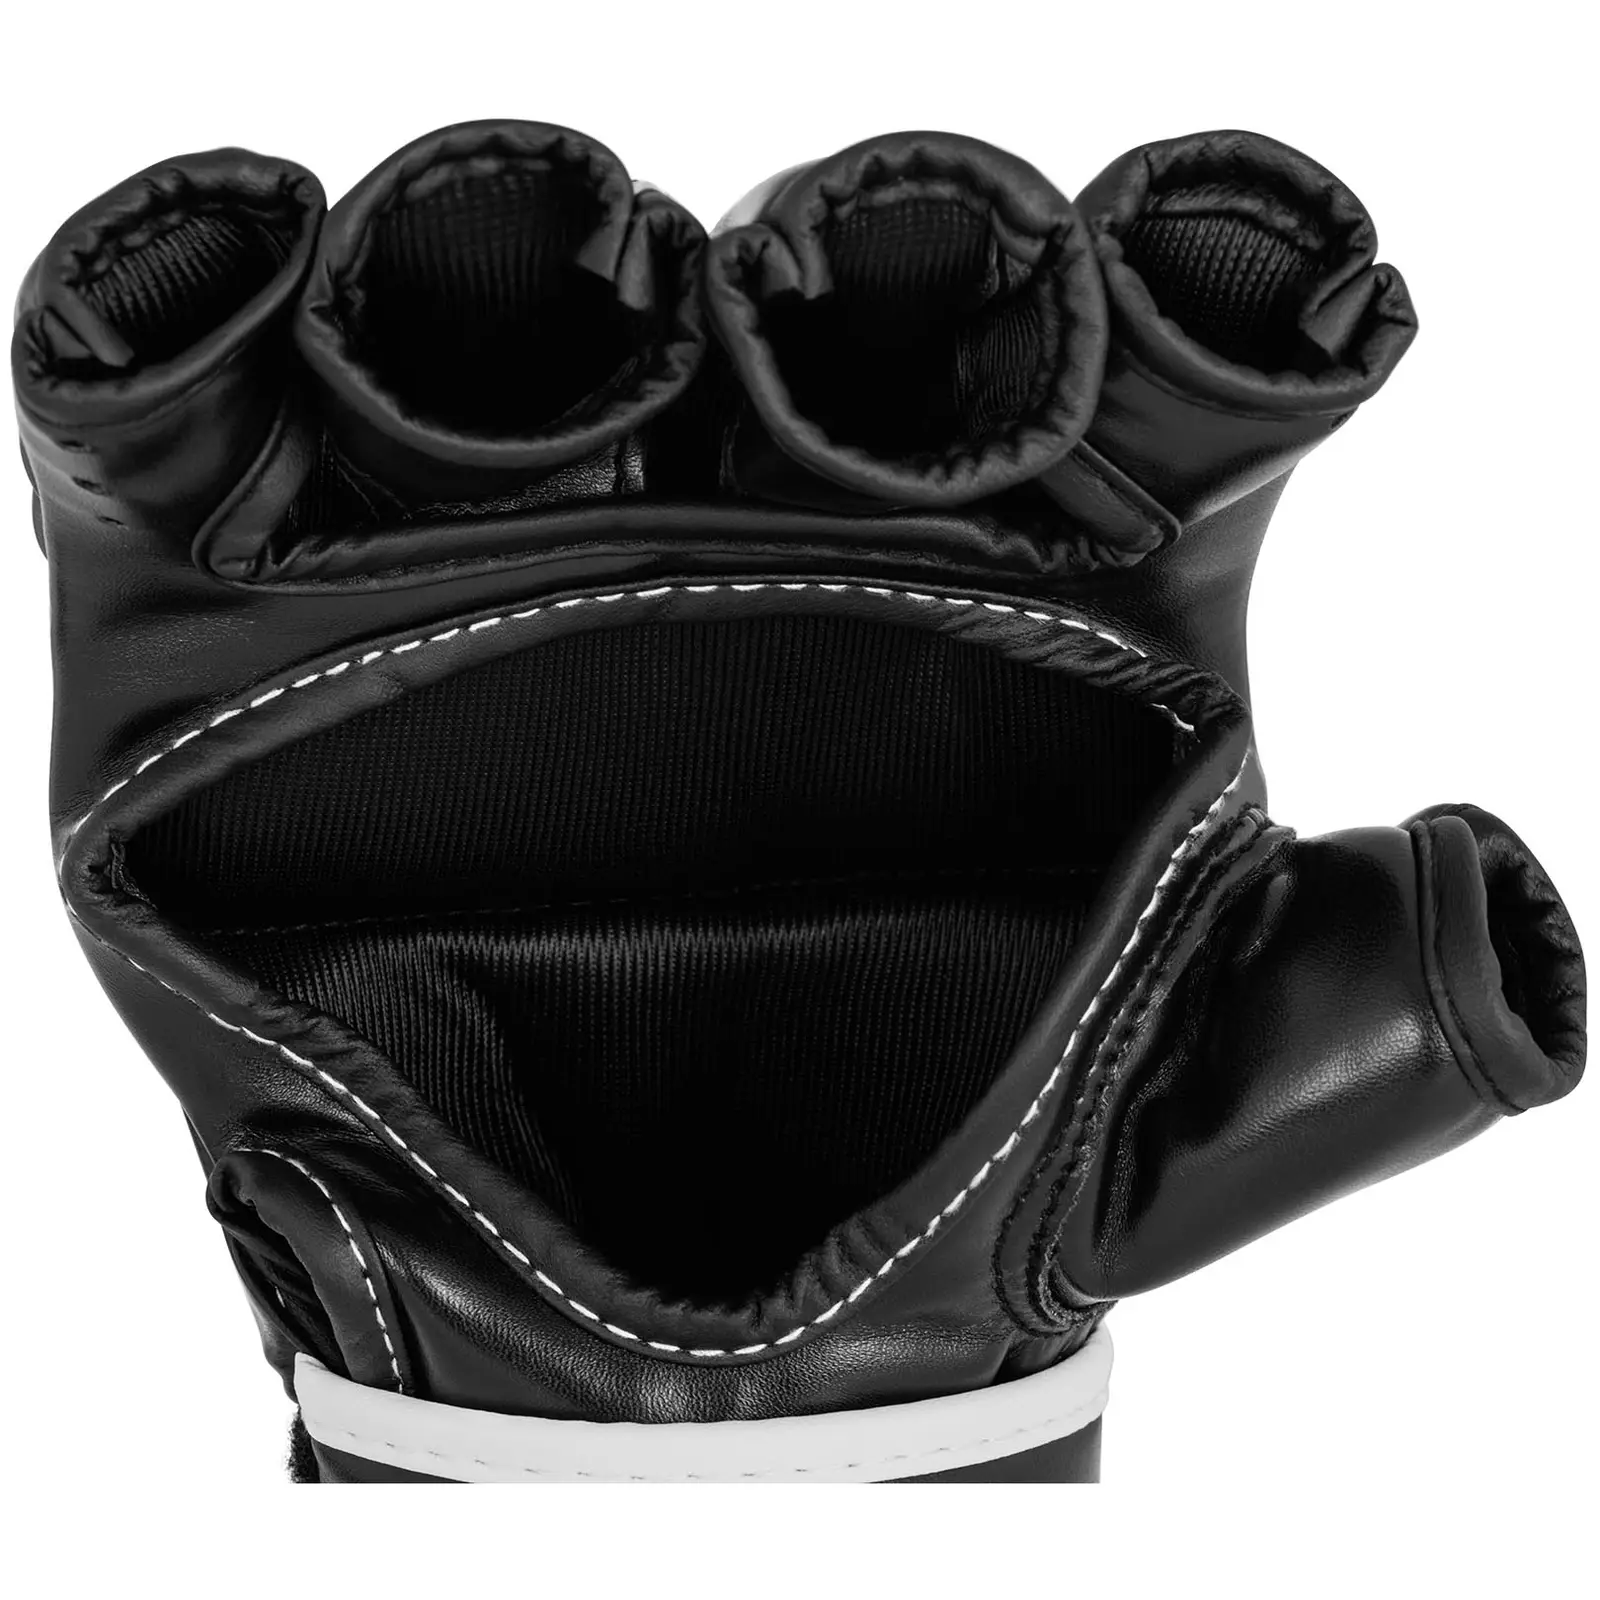 MMA kesztyű - L / XL méret - fekete